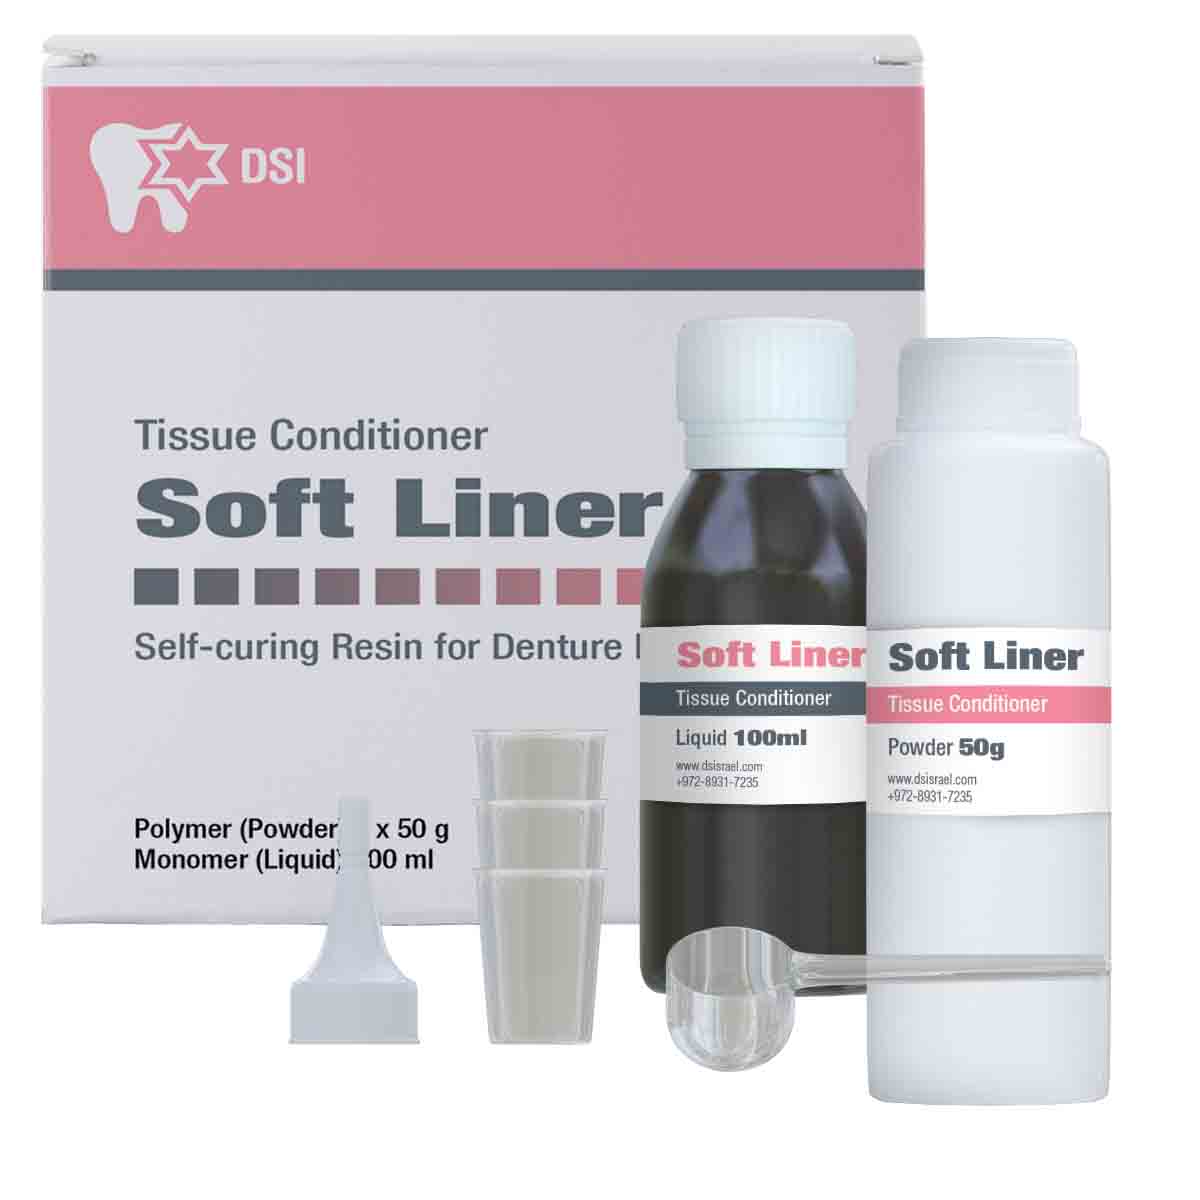 DSI Soft Liner Self-Curing Resin for Denture Reline